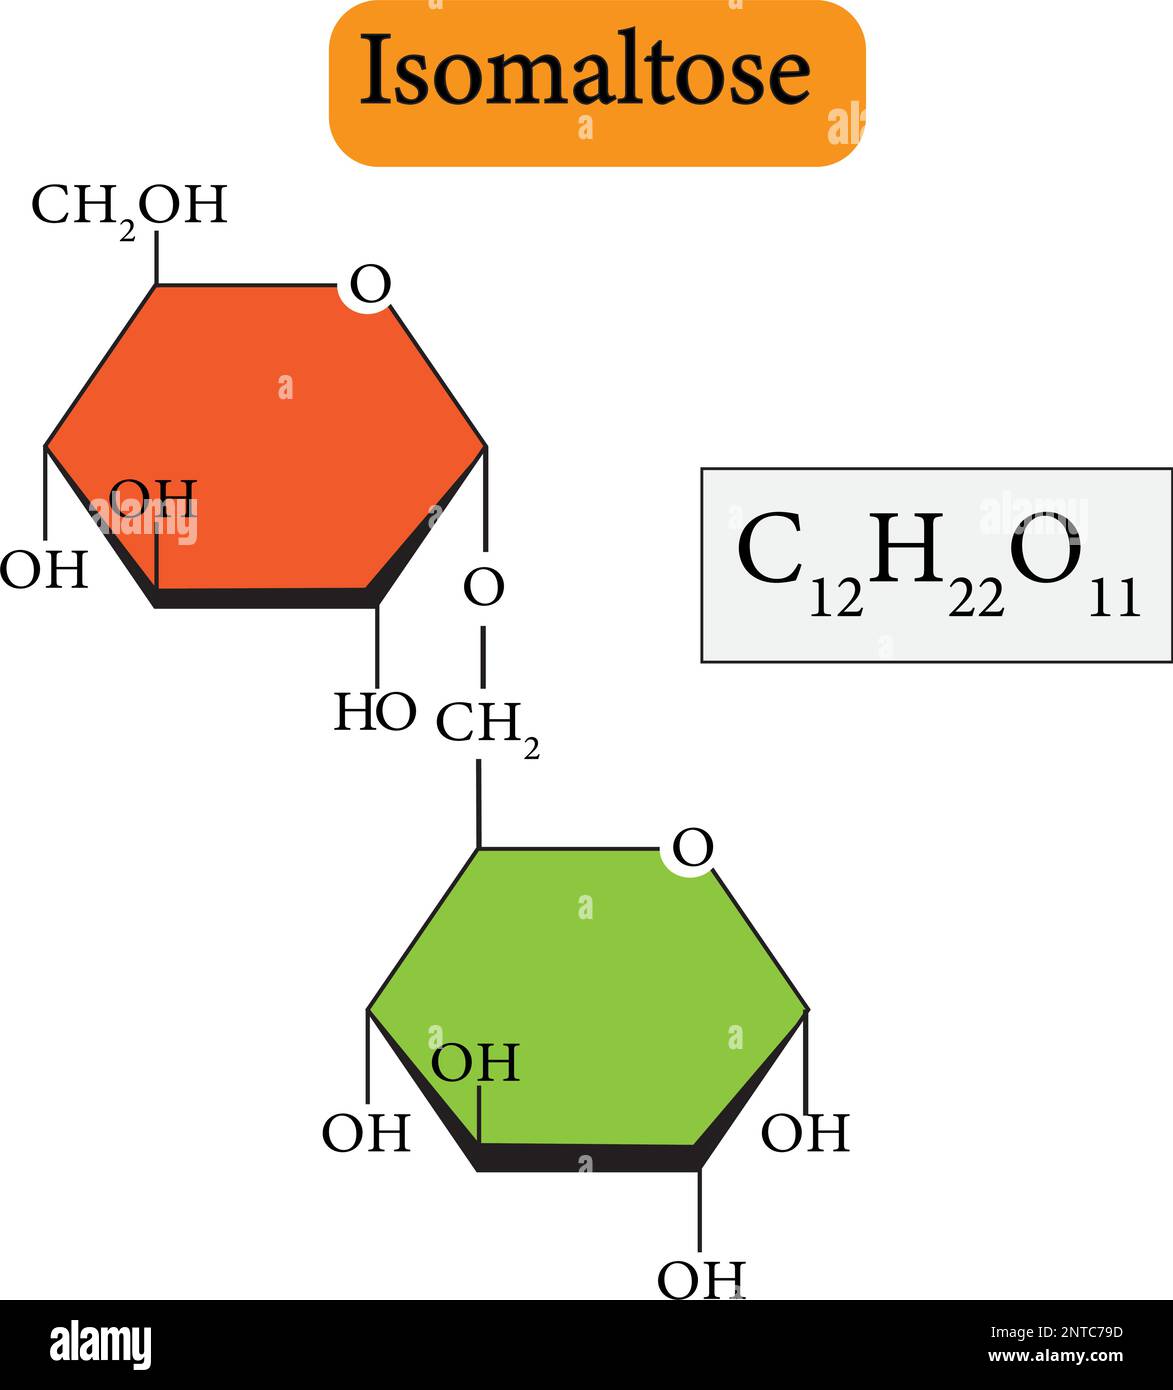 L'isomaltose est un simple hydrate de carbone, un disaccharide composé de deux molécules de glucose reliées par une liaison glycosidique alpha (1,6) [1,2]. Illustration de Vecteur